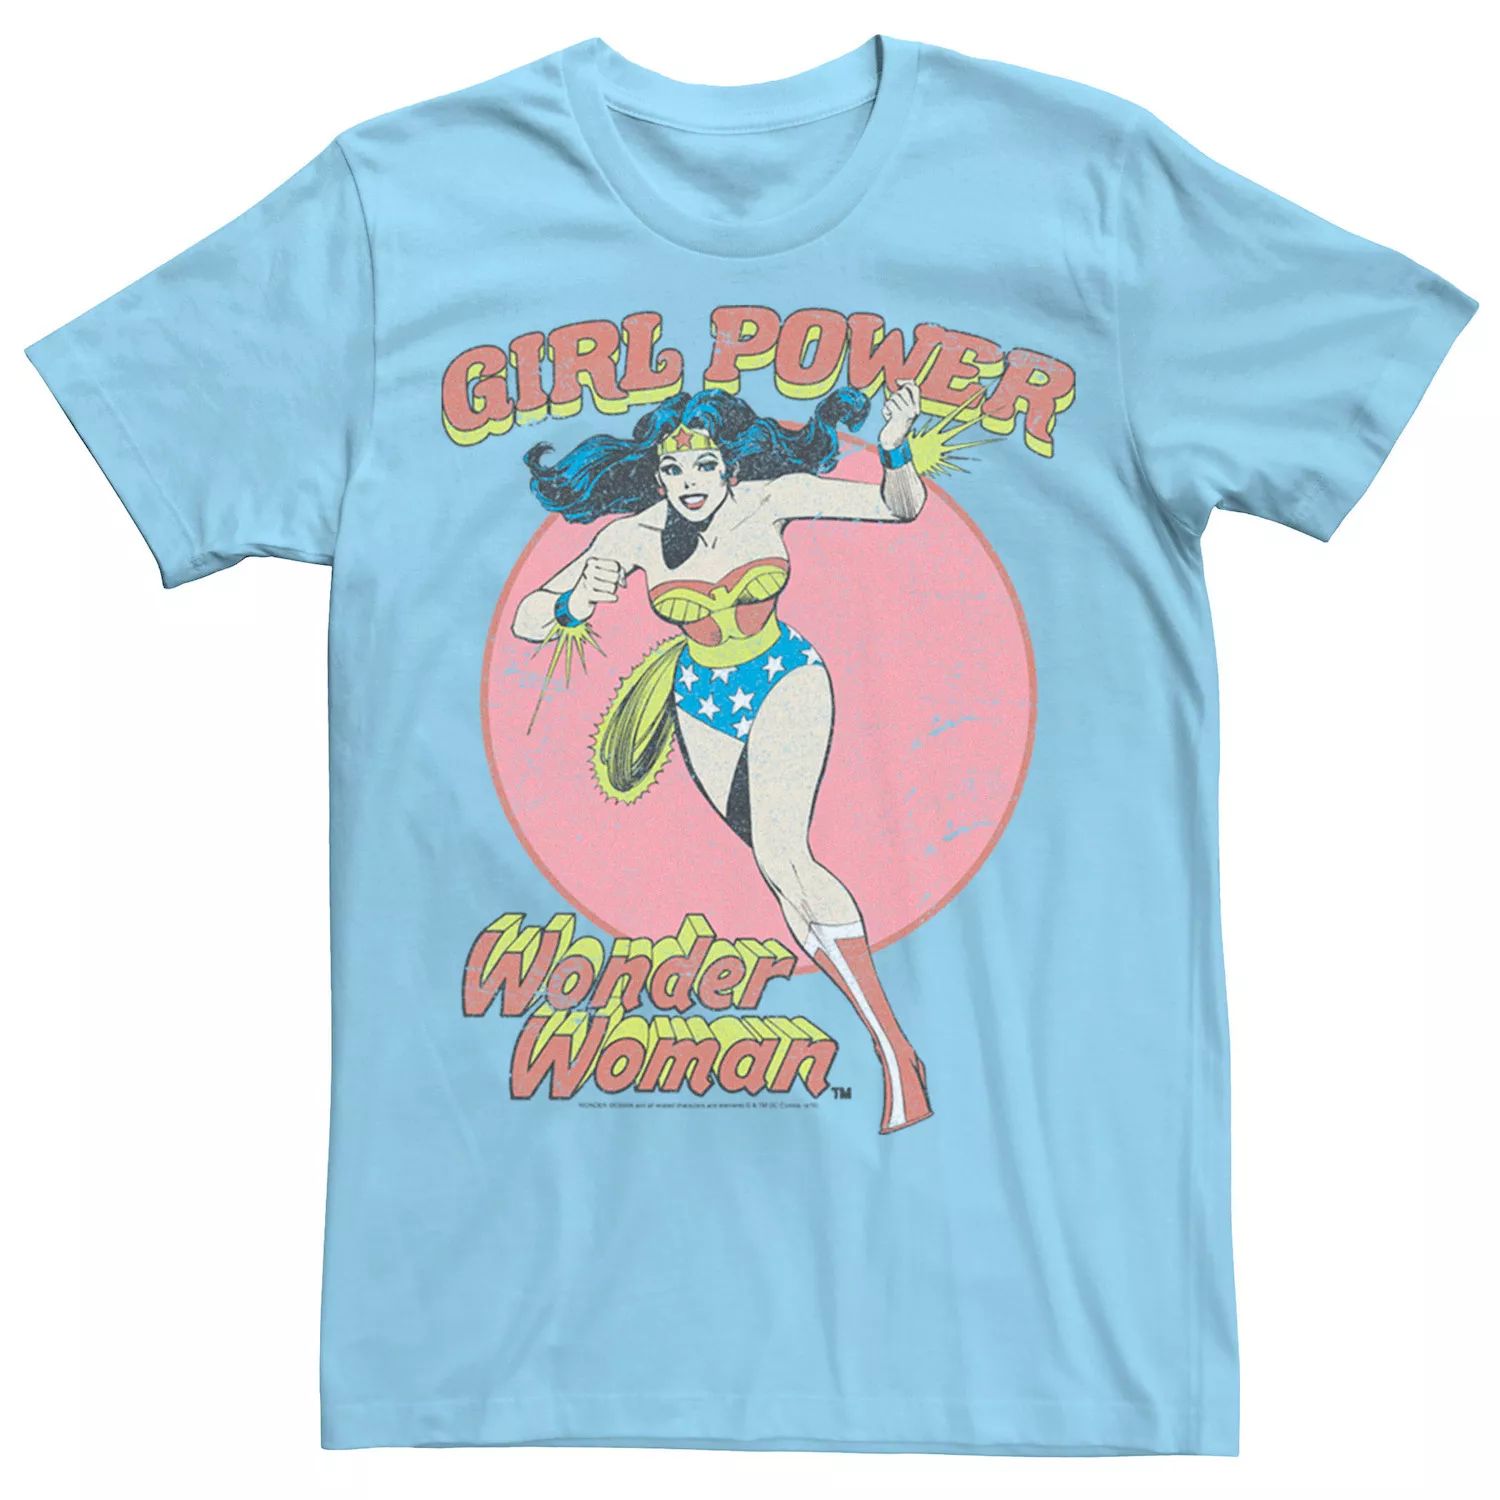 Мужская футболка с плакатом и текстовым плакатом «Чудо-женщина, бегущая девушка» DC Comics